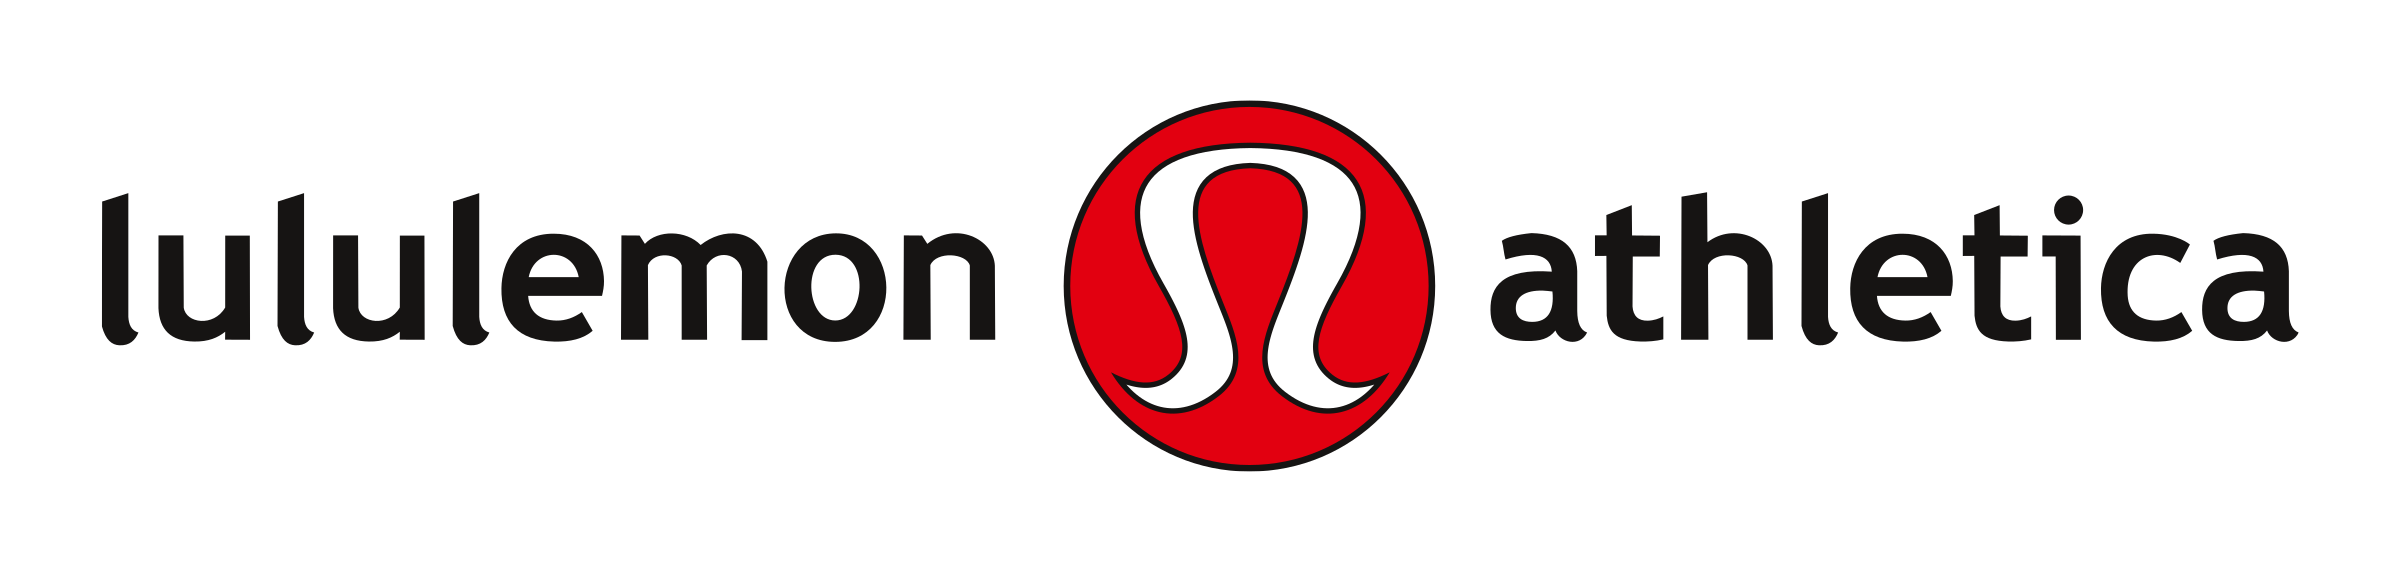 lululemon-logo-png-transparent.png